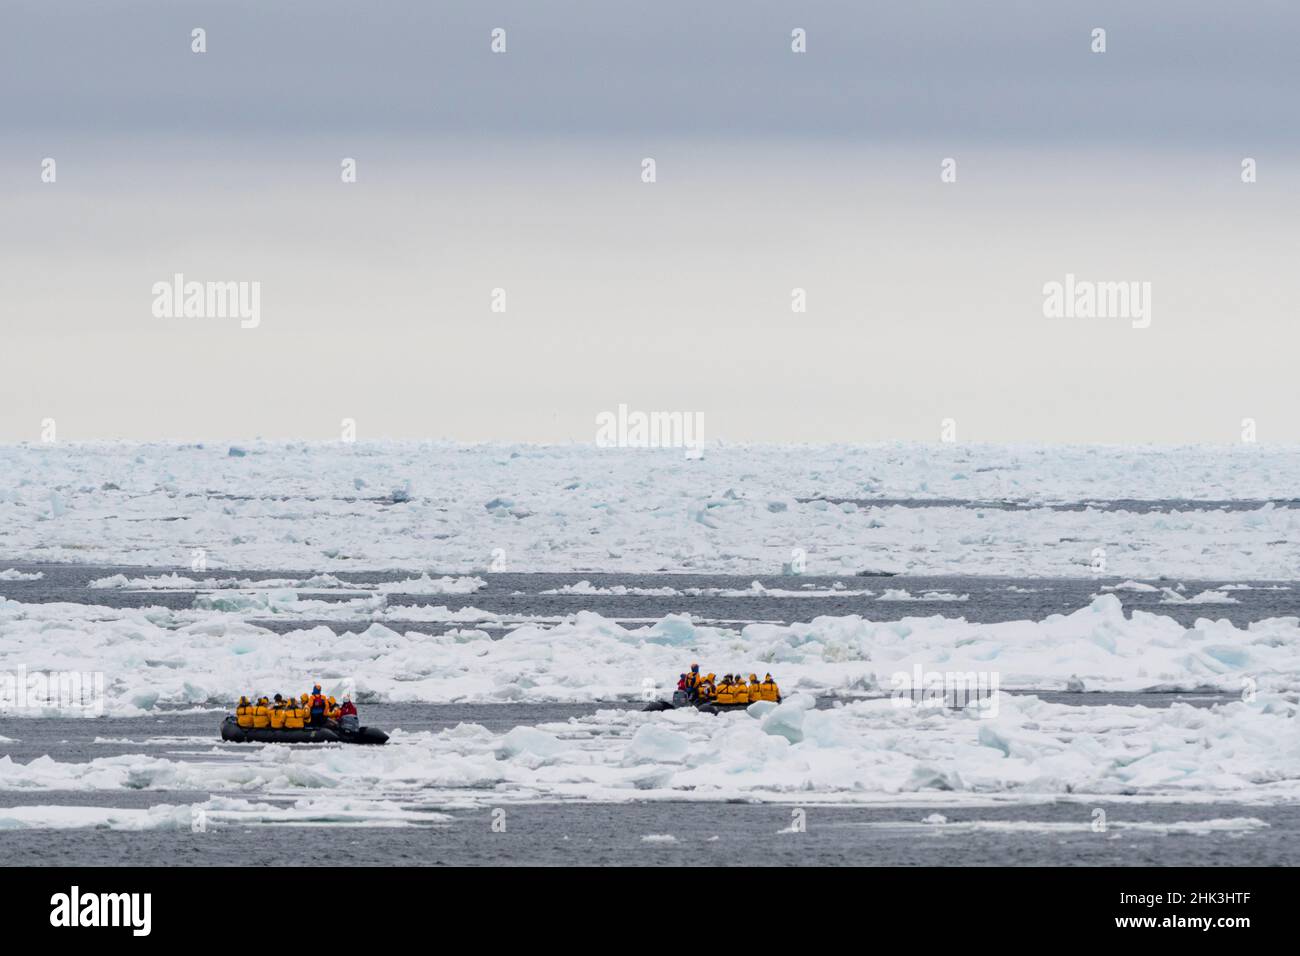 Touristes sur des bateaux gonflables explorant la calotte glaciaire polaire, au nord de Spitsbergen, en Norvège. Banque D'Images